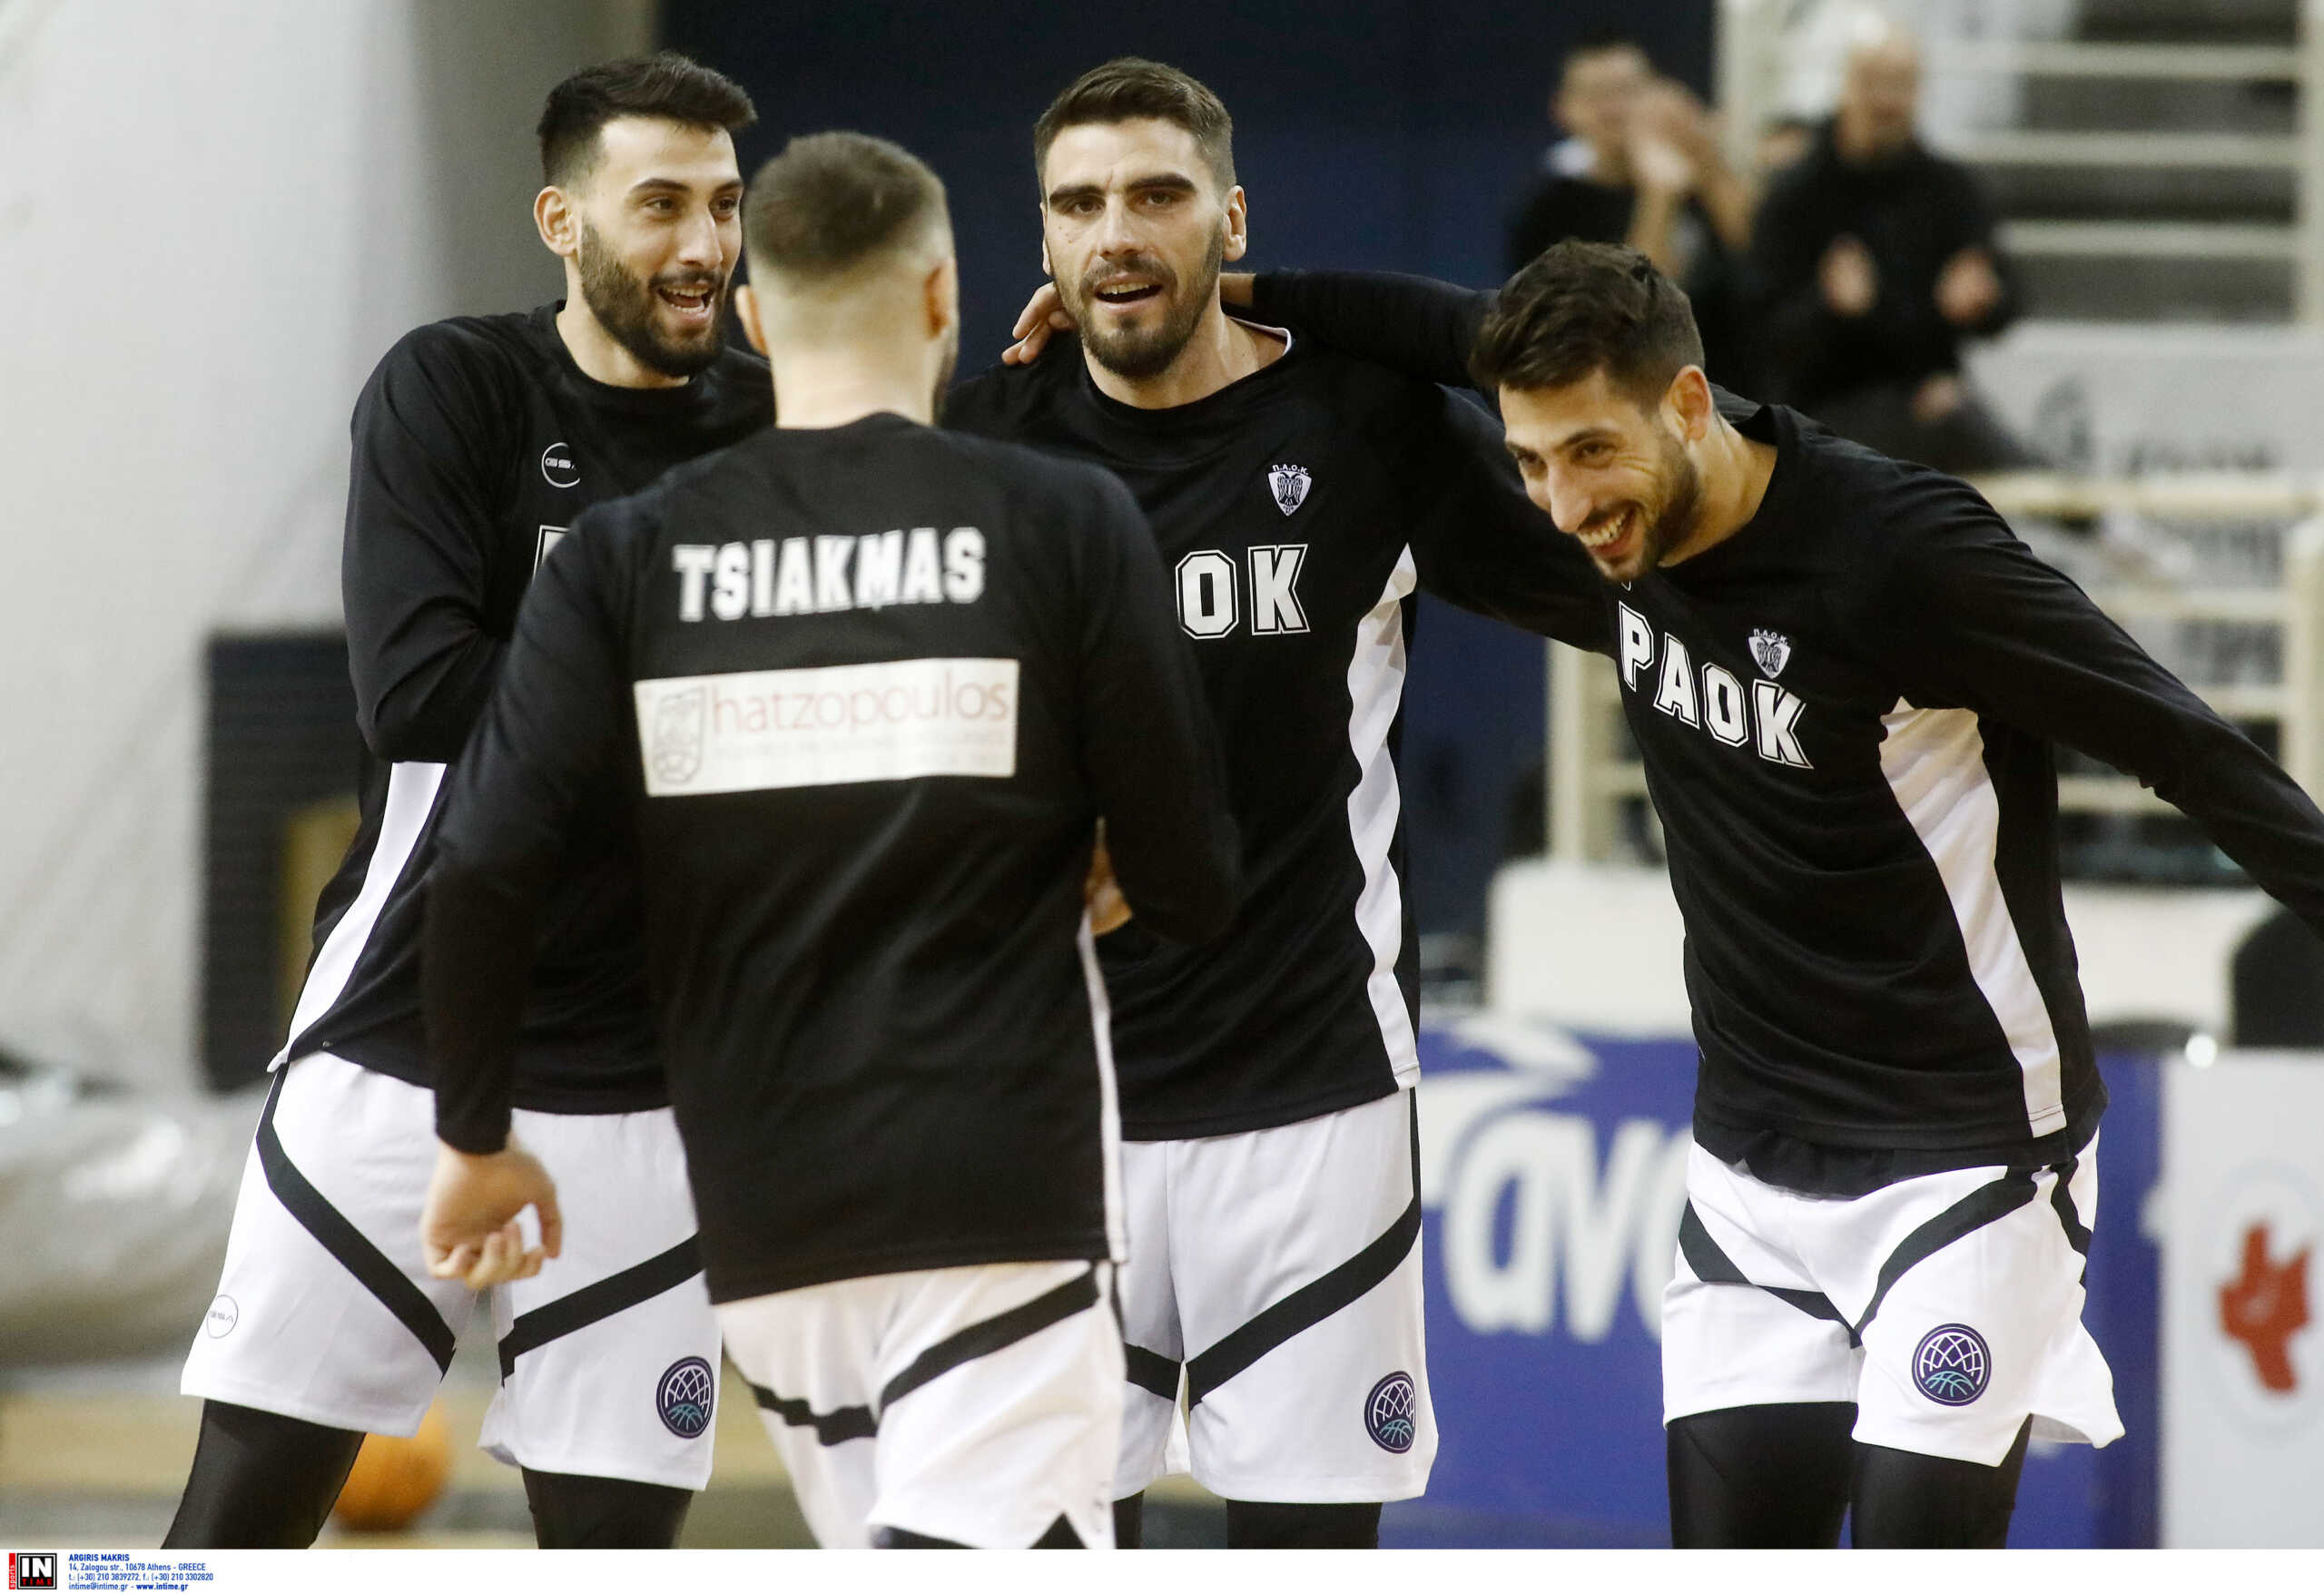 Ντιζόν – ΠΑΟΚ 69-74: Νίκη και πρόκριση για τους Θεσσαλονικείς στο Basketball Champions League